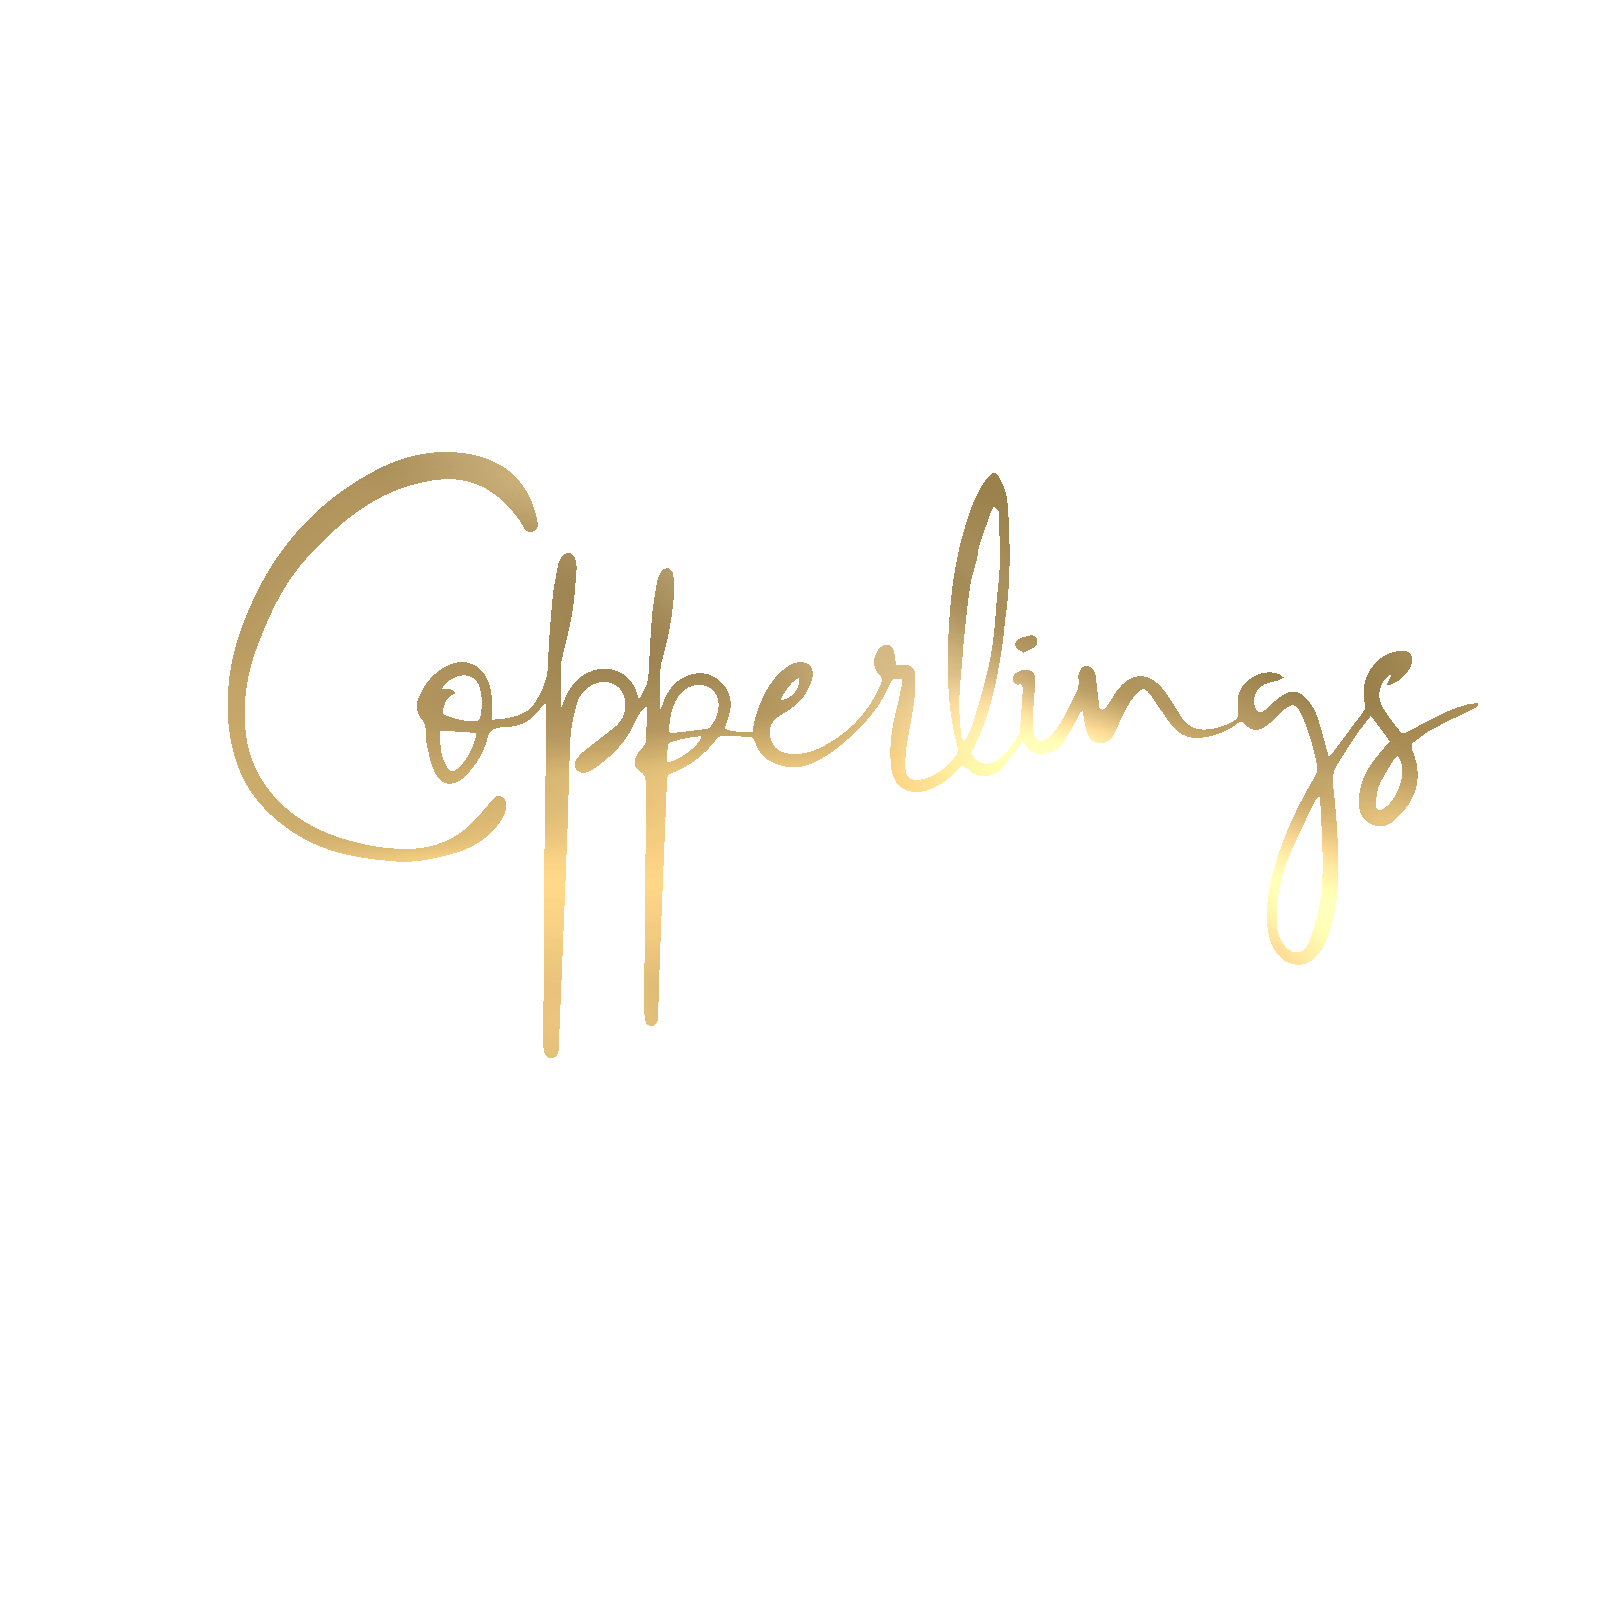 Copperlings